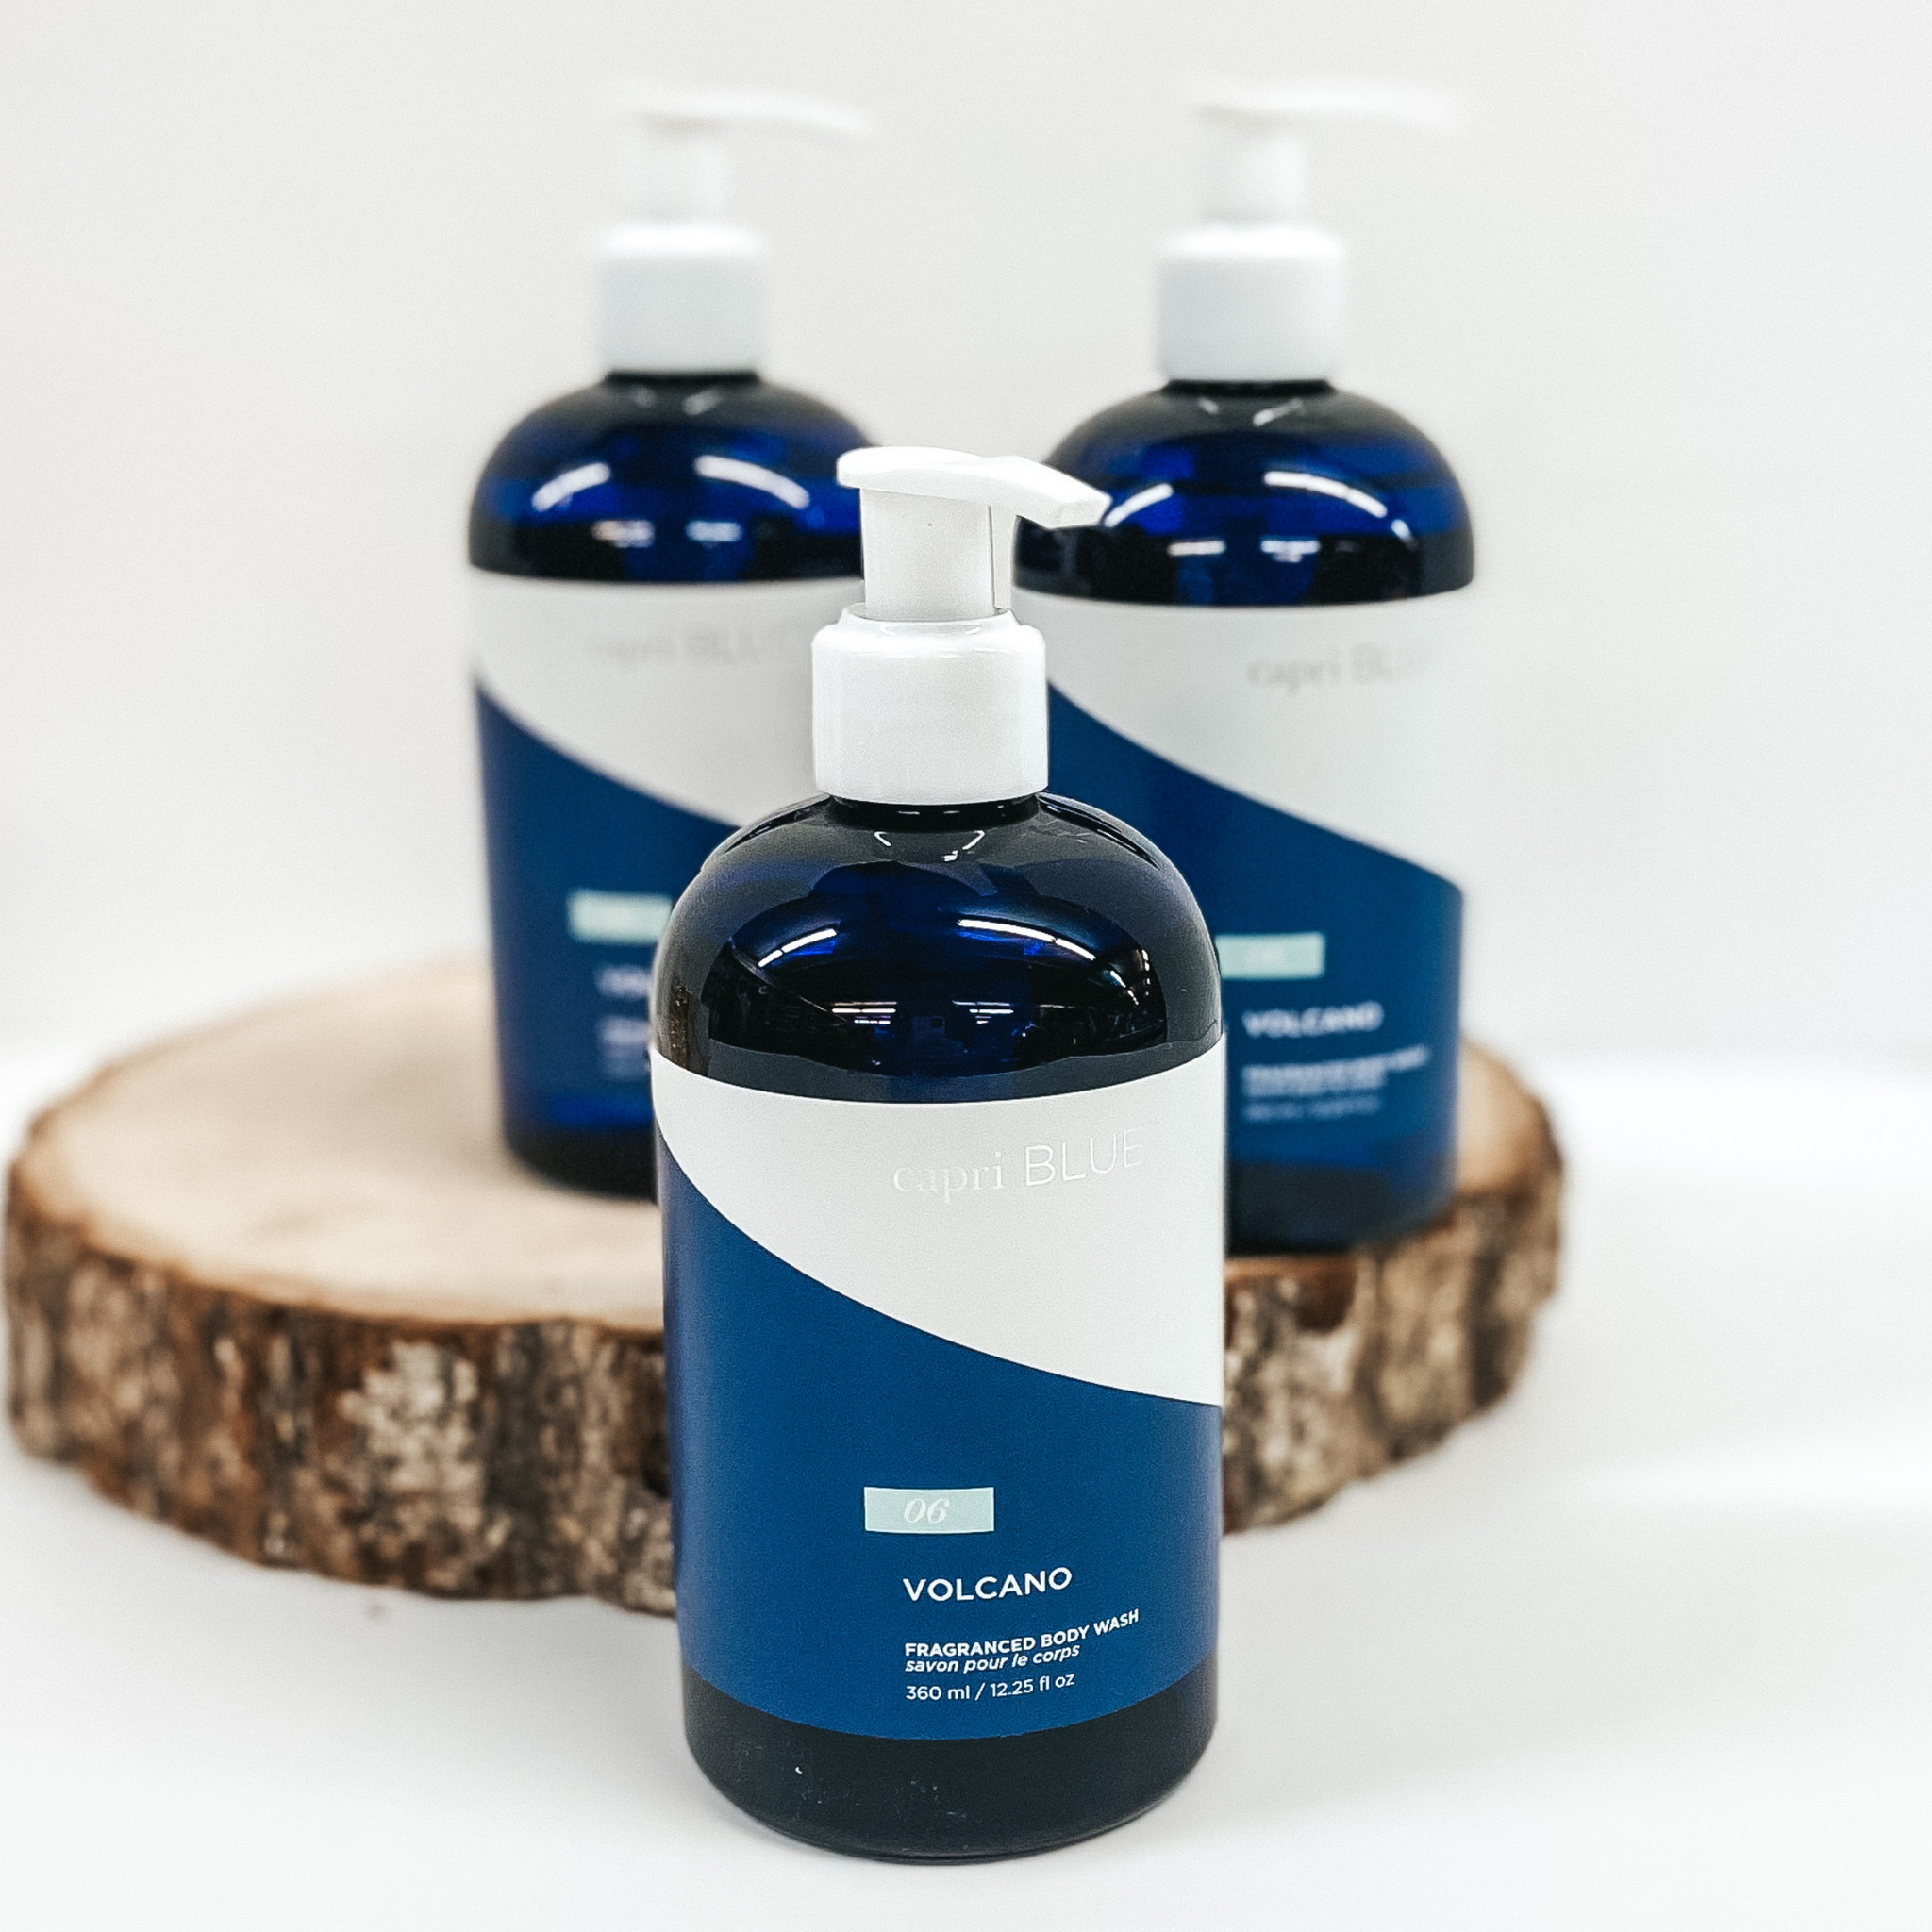 Capri Blue Volcano Body Wash - Citrus Scented Liquid Body Soap